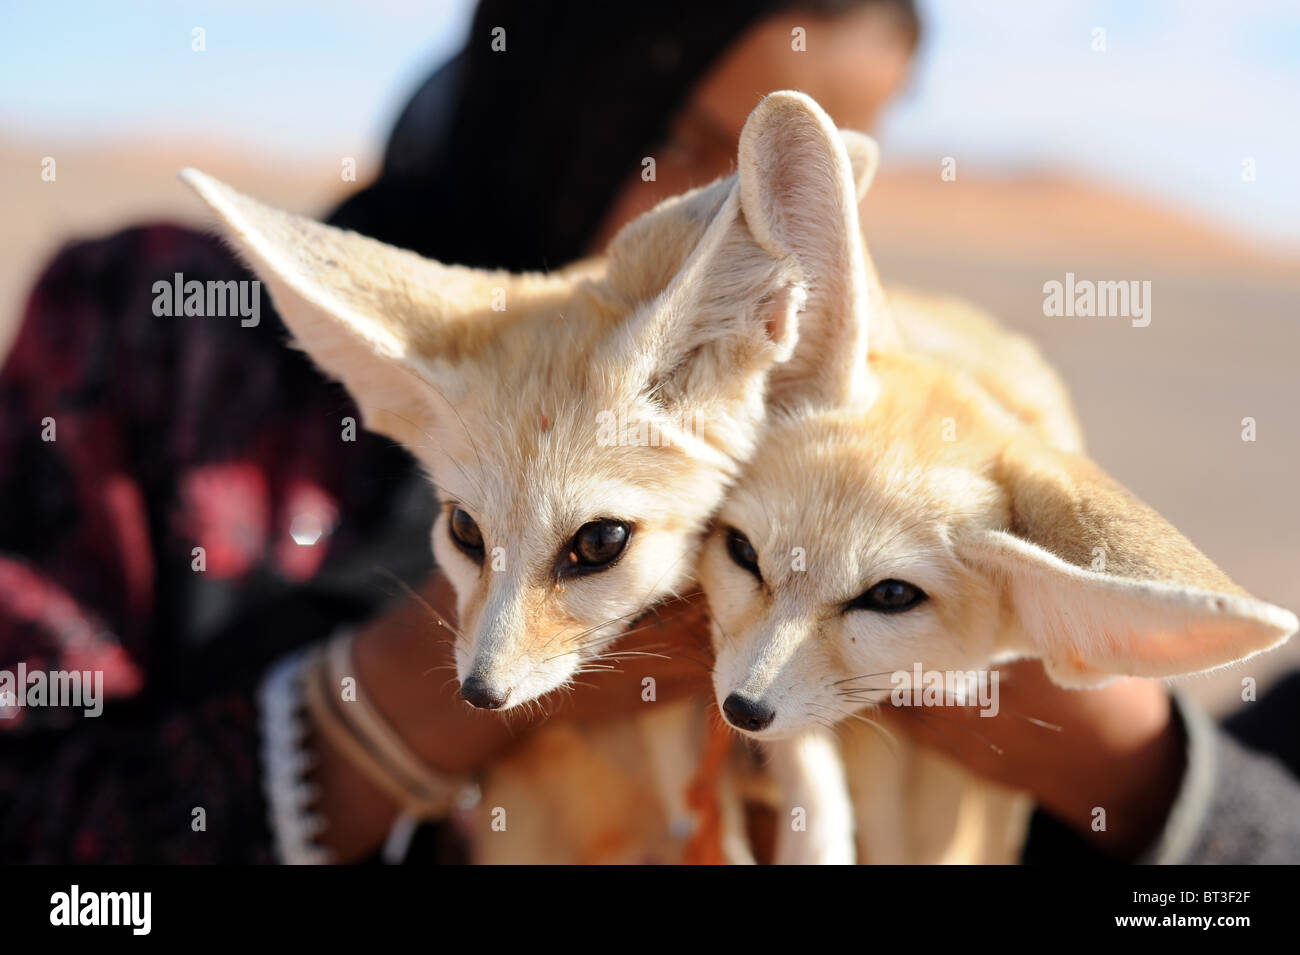 El bereber Chica sujetando dos cachorros de zorro del desierto blanco en el borde del desierto del Sáhara, Marruecos. Foto de stock